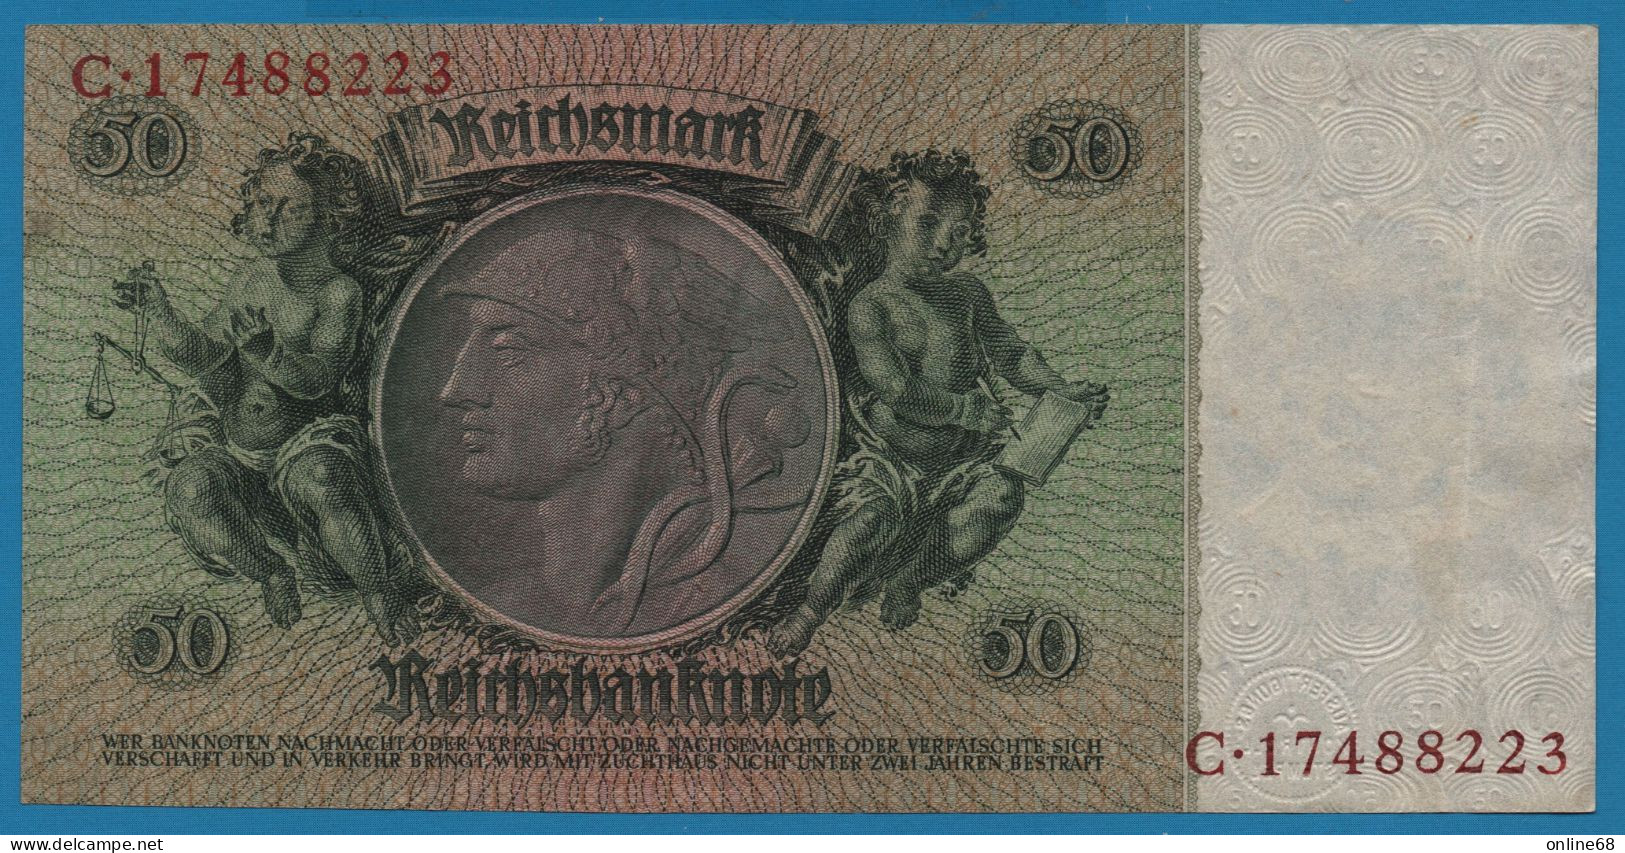 DEUTSCHES REICH 50 REICHSMARK 30.03.1933 LETTER K # C.17488223 P# 182a  David Hansemann - 50 Reichsmark